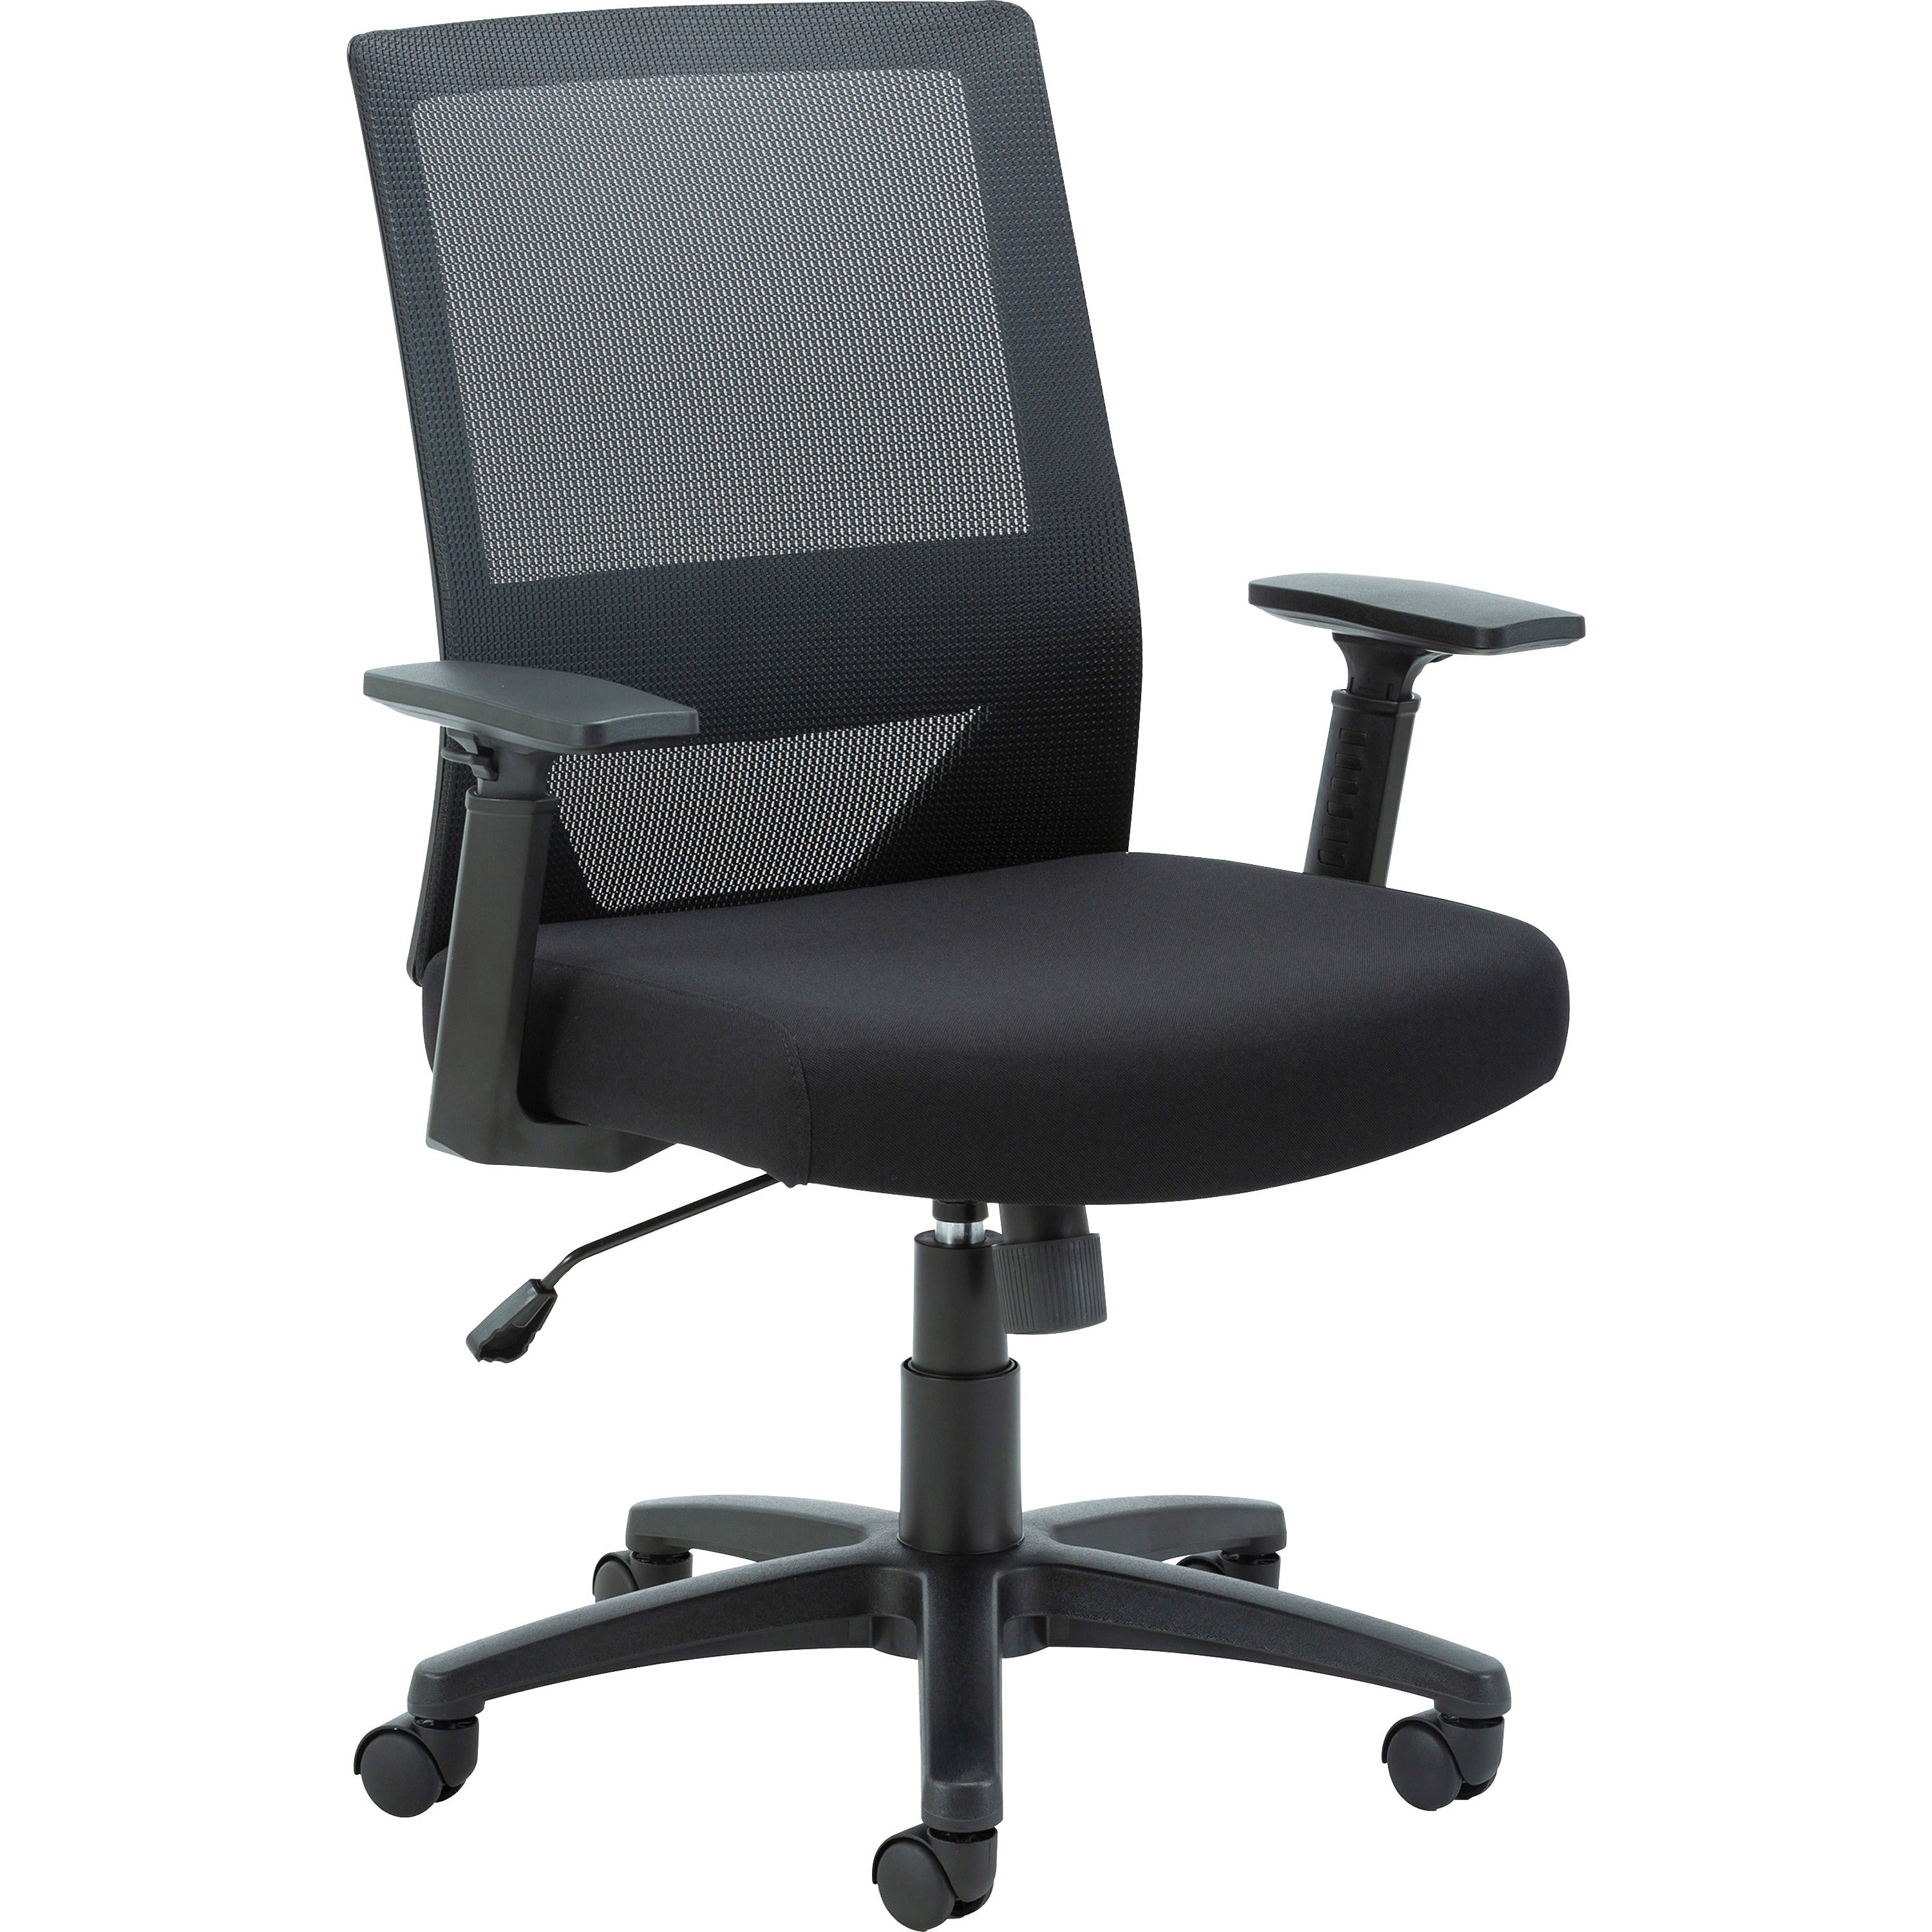 lorell-soho-mesh-mid-back-task-chair-gray-fabric-seat-gray-fabric-back-mid-back-5-star-base-black-armrest-1-each_llr41840 - 1